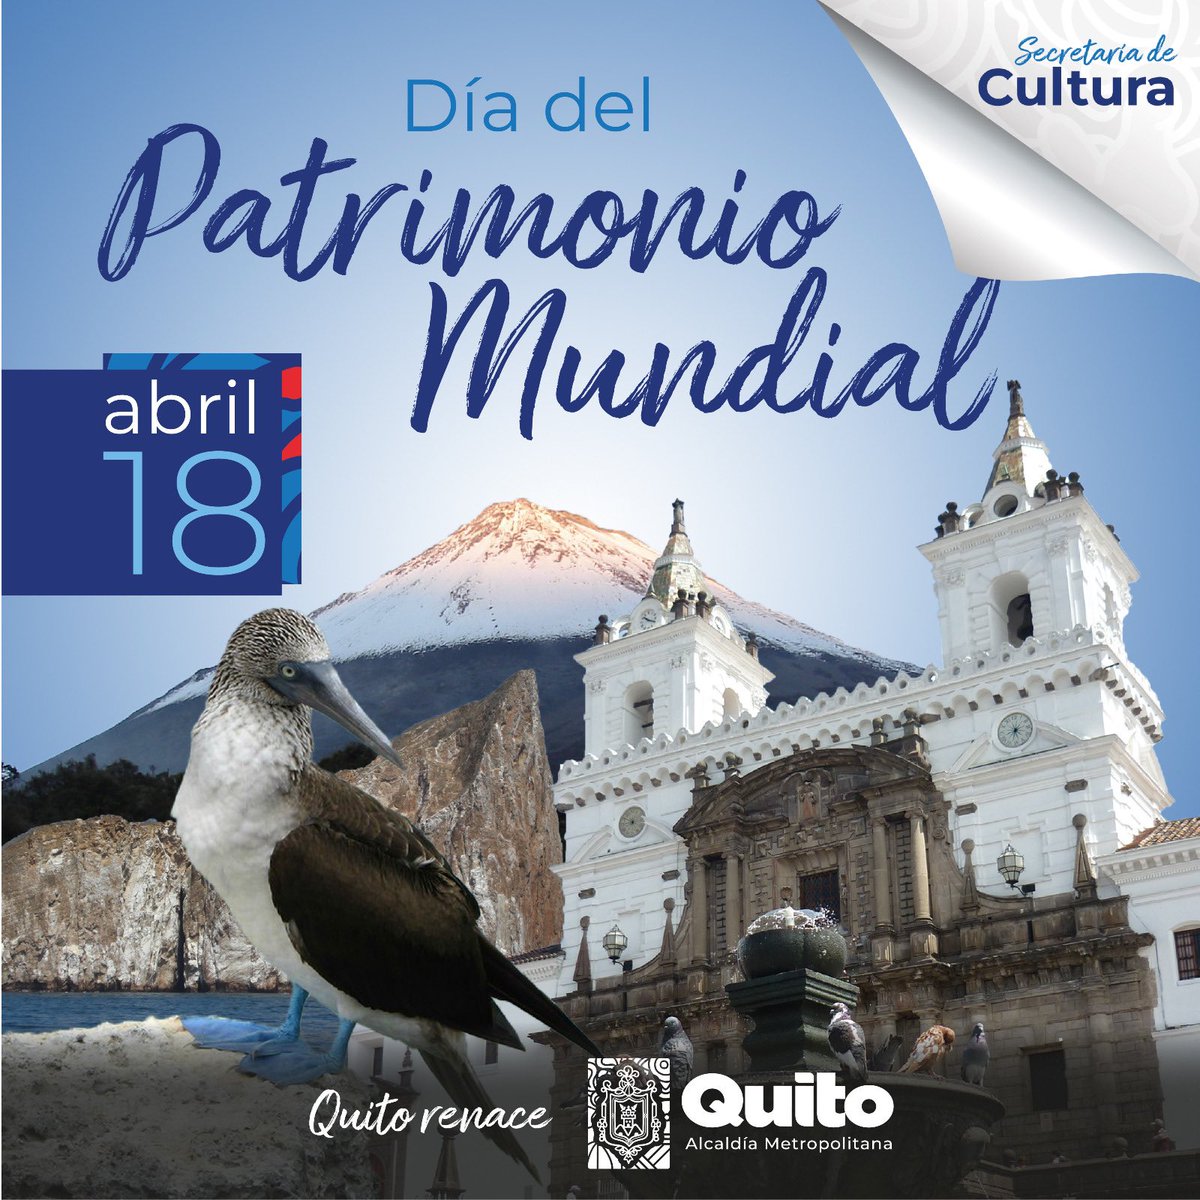 🔰 #QuitoConCultura | En el Día Del del Patrimonio Mundial, reflexionamos sobre la fragilidad de nuestro legado cultural y nos comprometemos a su preservación,por una #CulturaViva. Cuidemos y valoricemos nuestras raíces, protegiendo lo que nos define como sociedad. 
#QuitoRenace